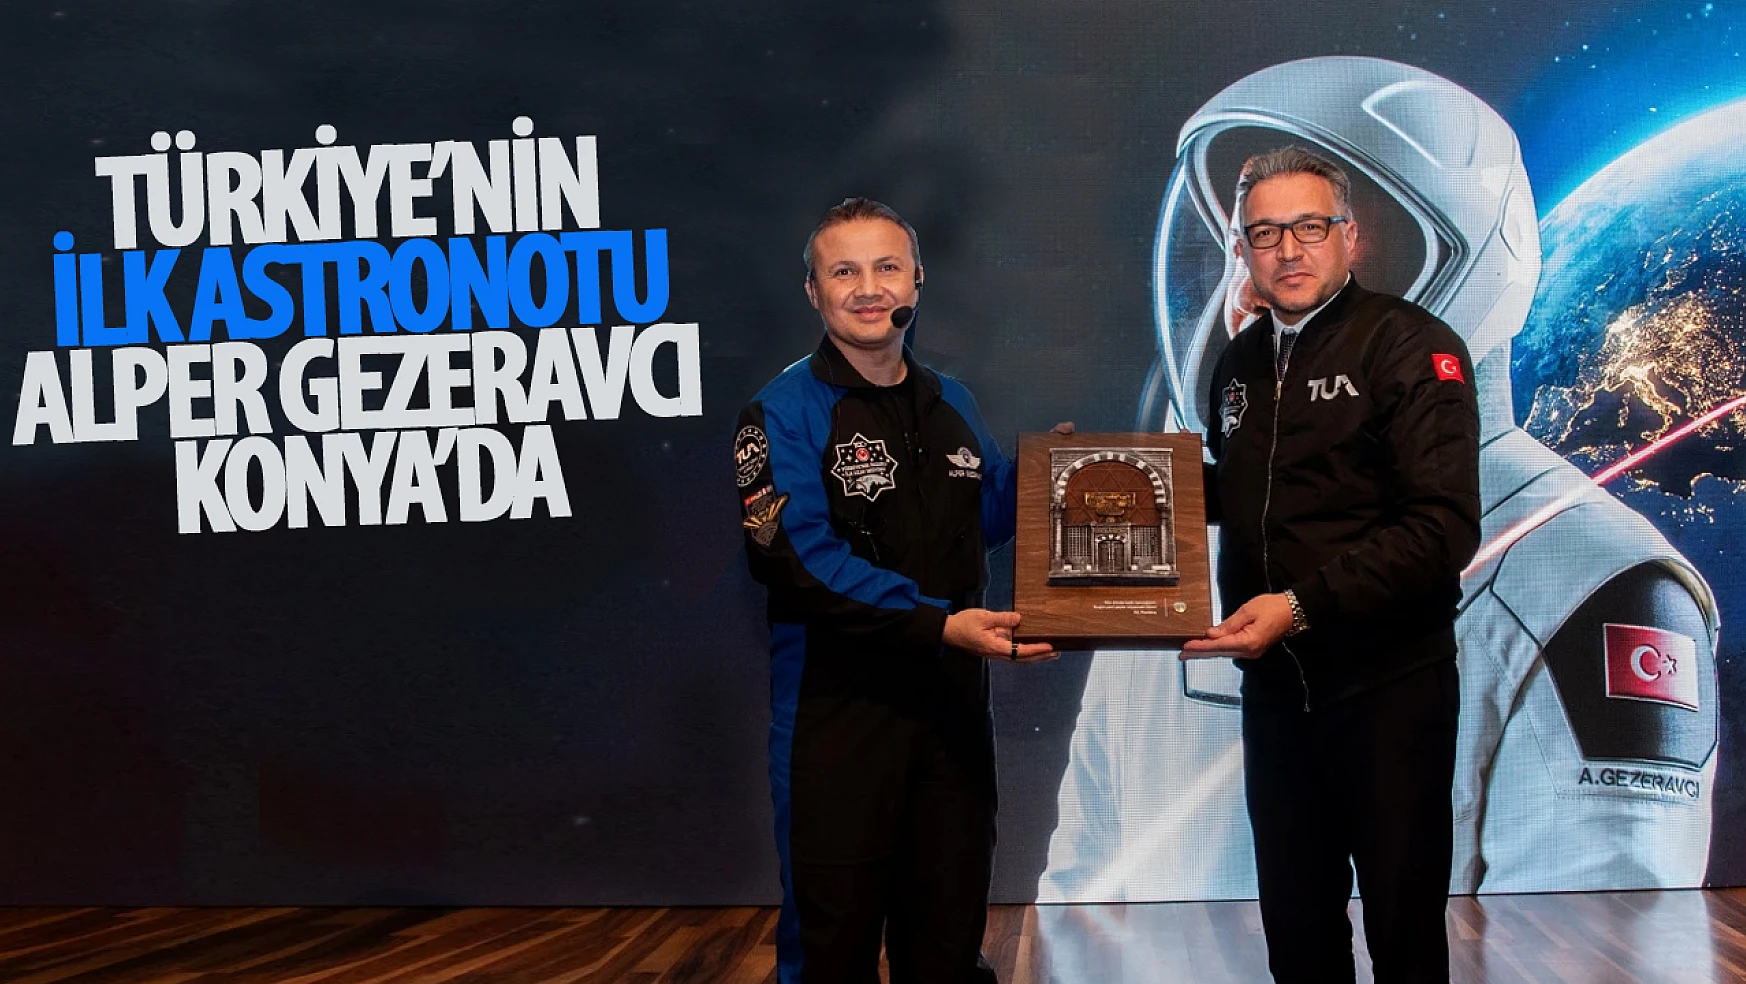 Türkiye'nin ilk astronotu Gezeravcı Konya'da!